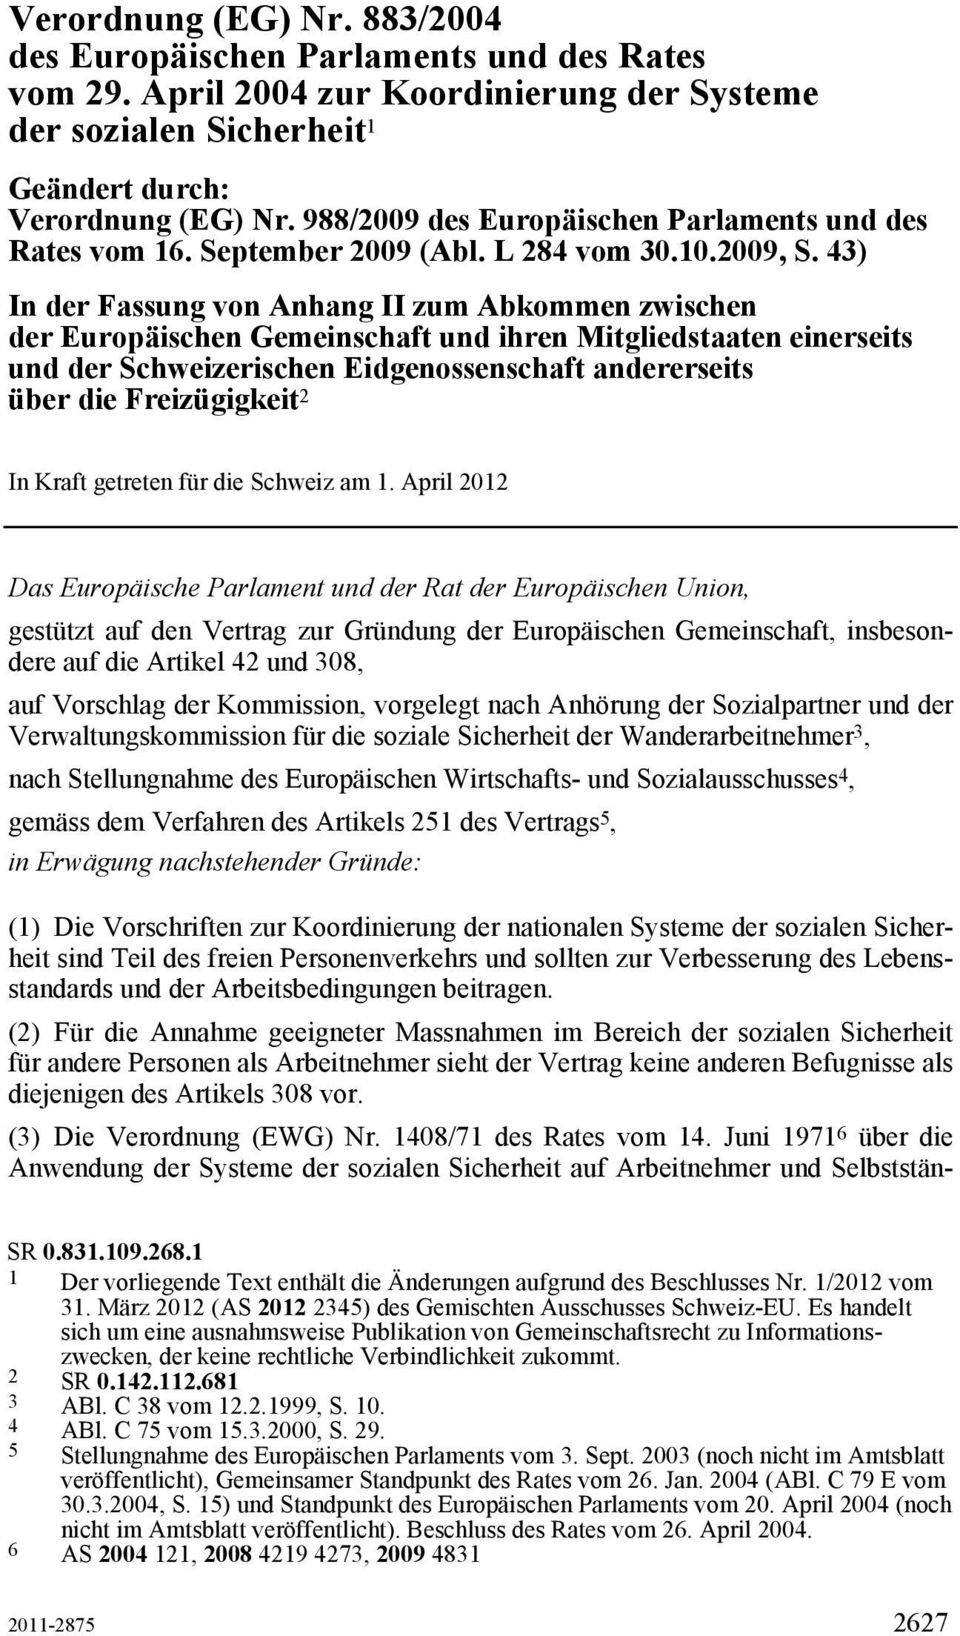 43) In der Fassung von Anhang II zum Abkommen zwischen der Europäischen Gemeinschaft und ihren Mitgliedstaaten einerseits und der Schweizerischen Eidgenossenschaft andererseits über die Freizügigkeit